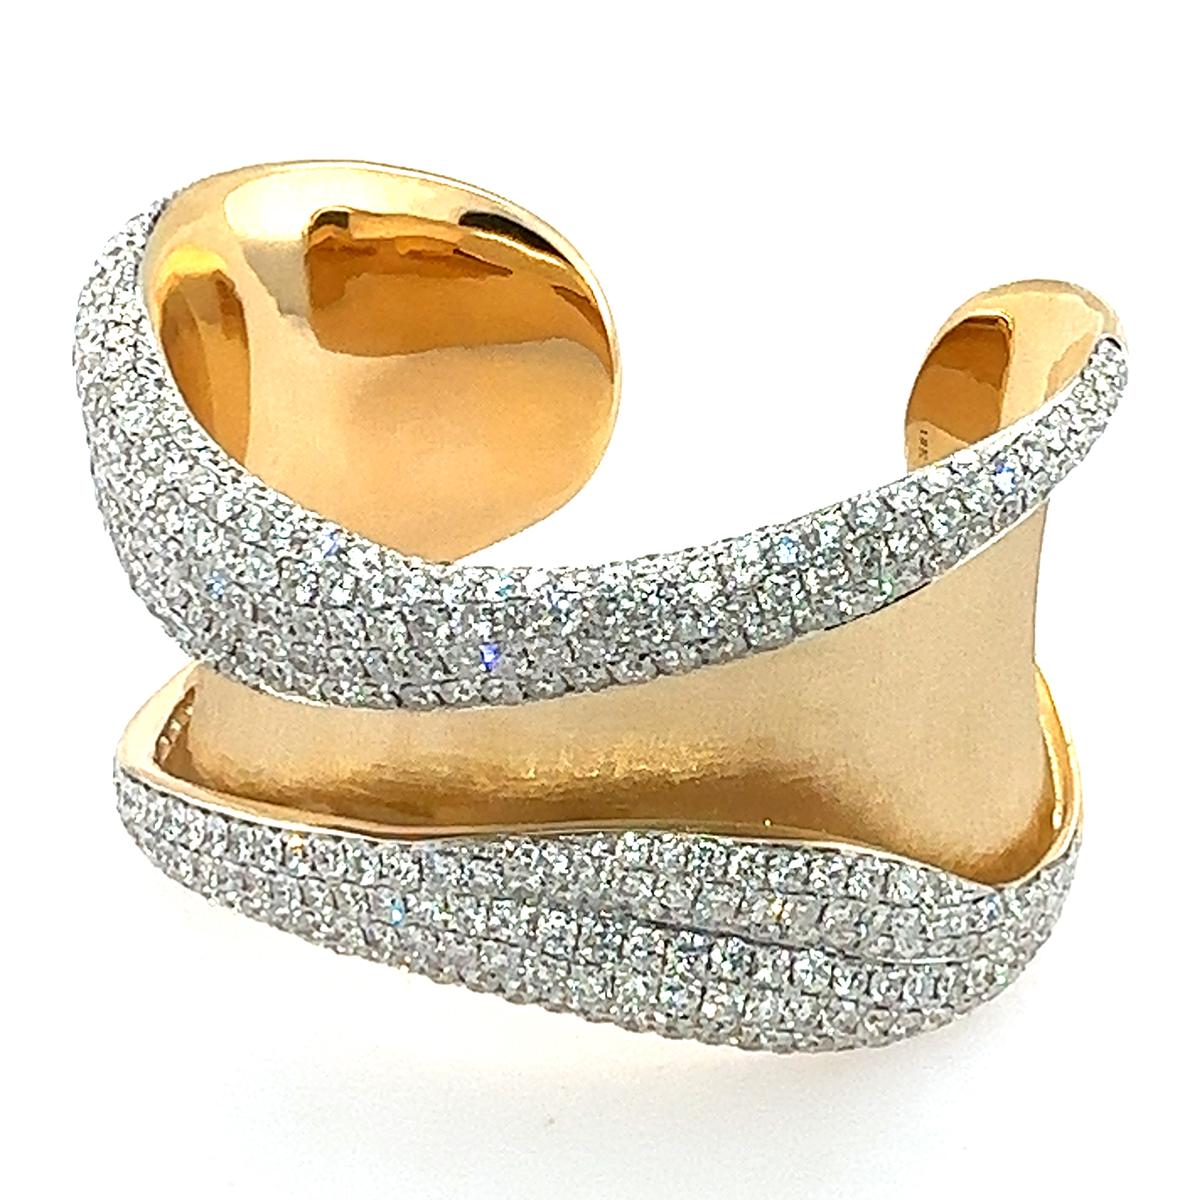 Superbe bracelet manchette en or 18k satiné avec 422 diamants ronds naturels de taille brillant en serti clos pesant 19,01 carats et 102,36 grammes d'or 18k.